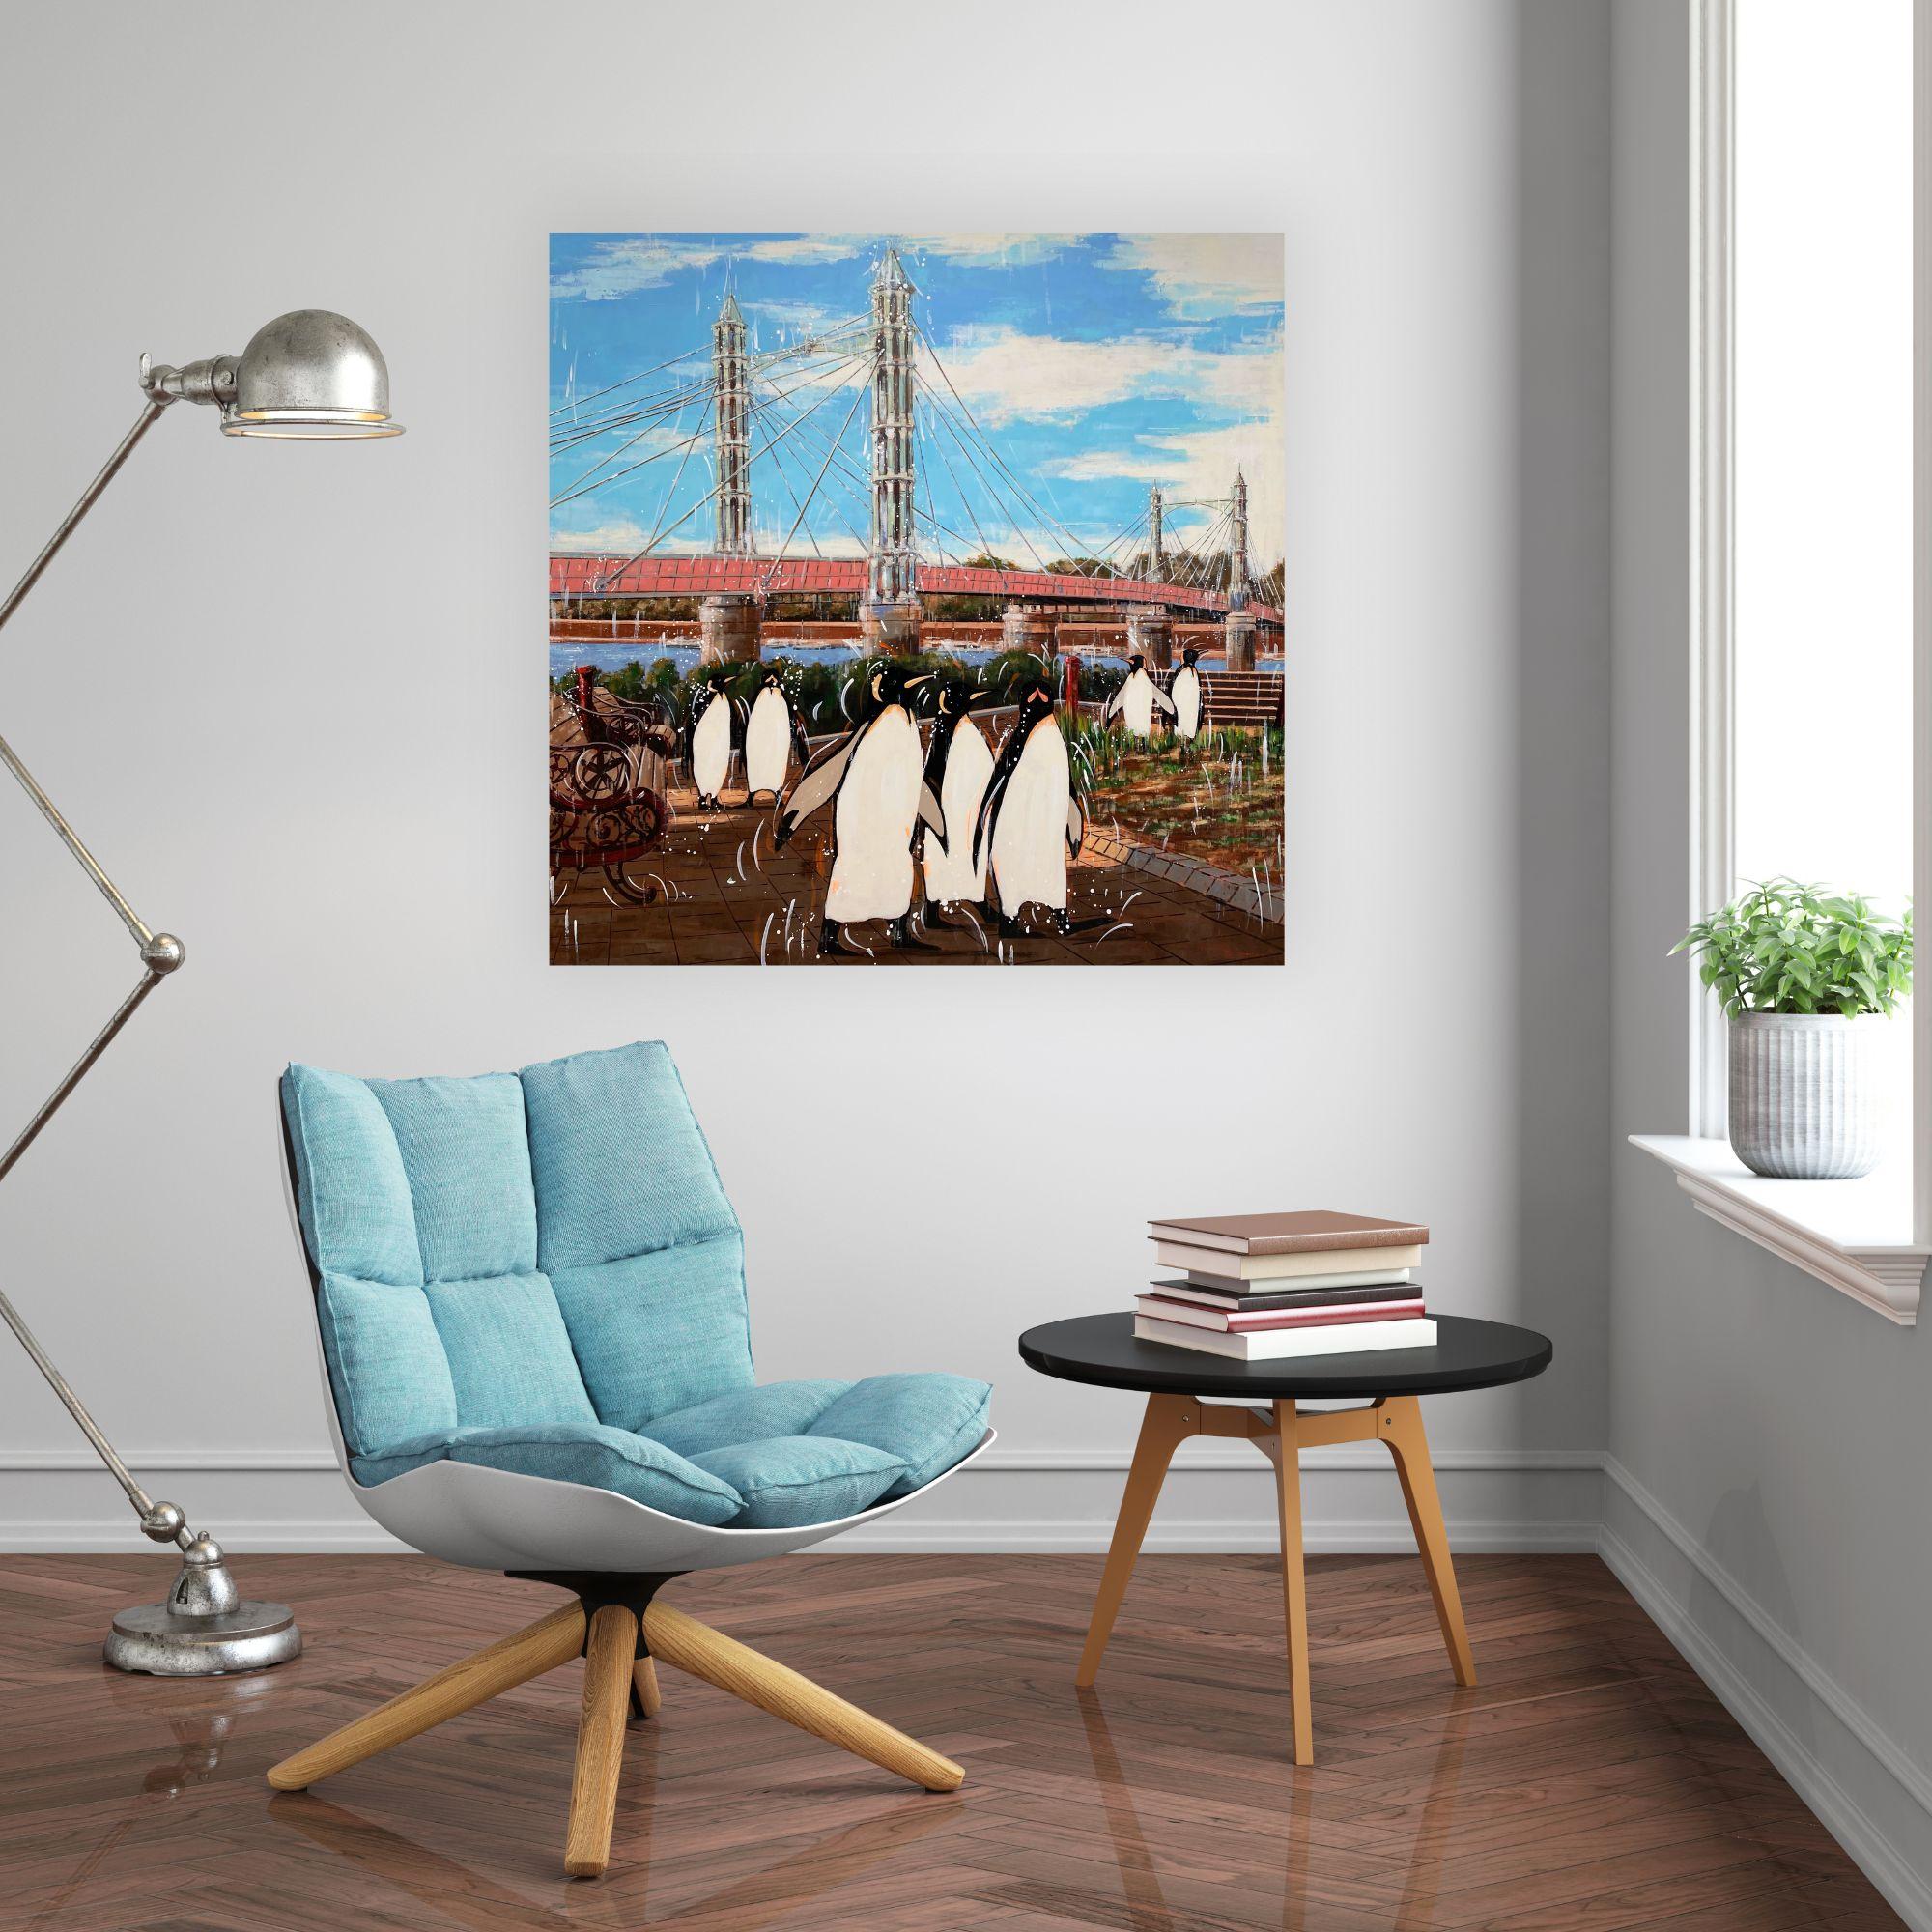 Dans cette peinture surréaliste contemporaine, Nathan Icone fusionne habilement un paysage urbain familier et des éléments architecturaux classiques avec la présence inattendue d'un pingouin arctique près de l'emblématique Albert Bridge à Londres.